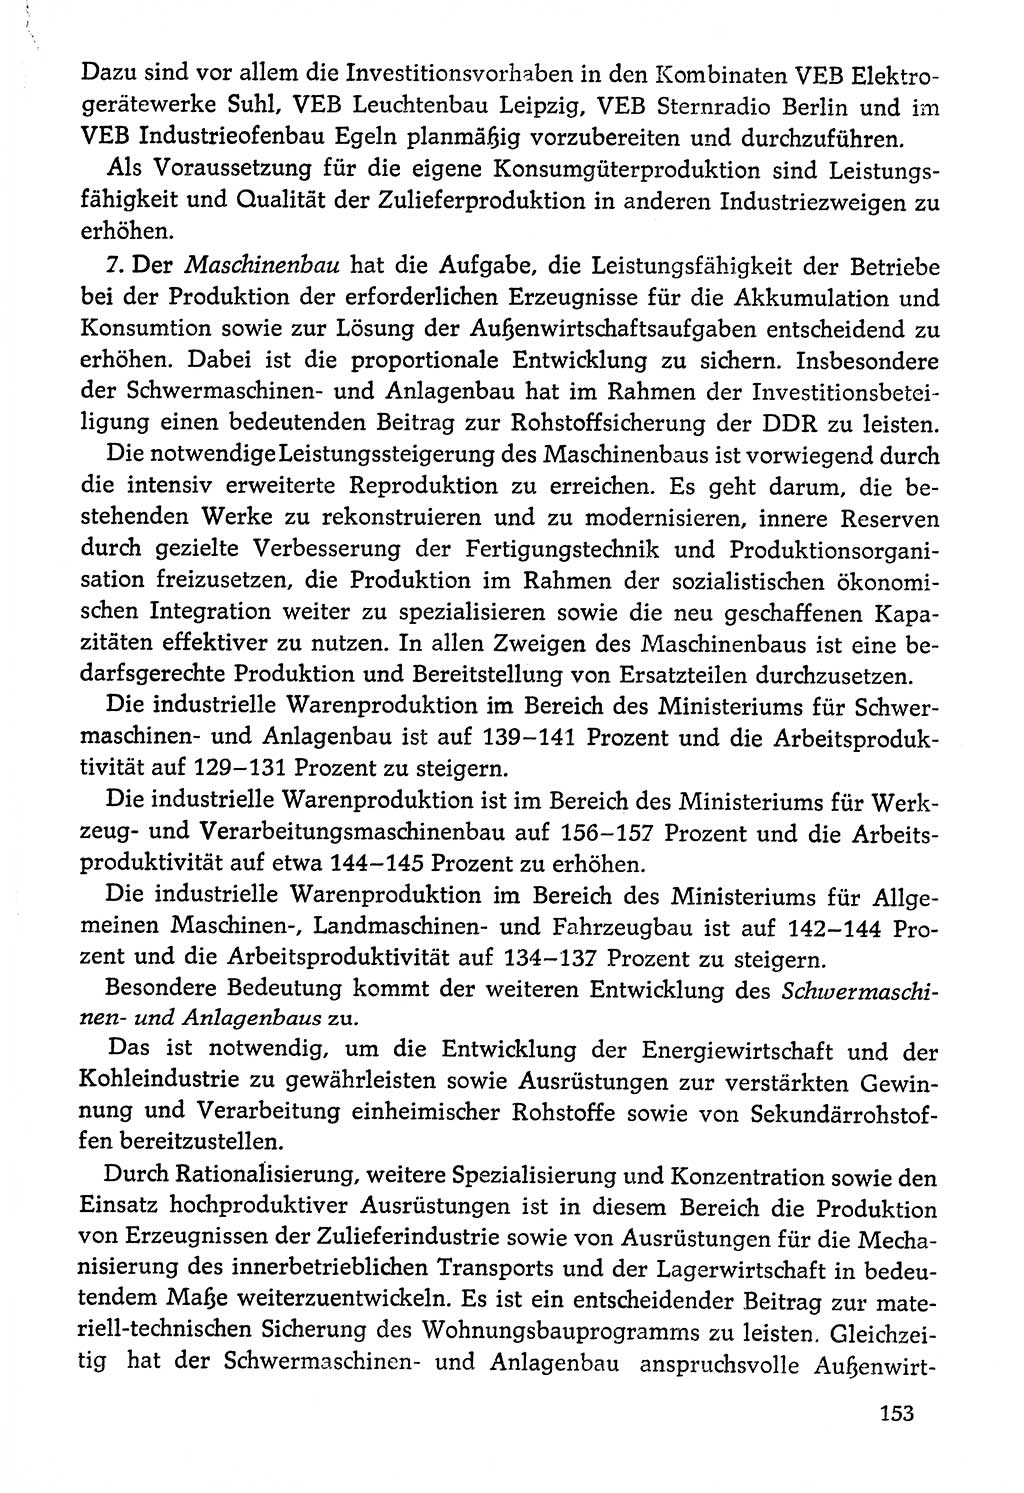 Dokumente der Sozialistischen Einheitspartei Deutschlands (SED) [Deutsche Demokratische Republik (DDR)] 1976-1977, Seite 153 (Dok. SED DDR 1976-1977, S. 153)